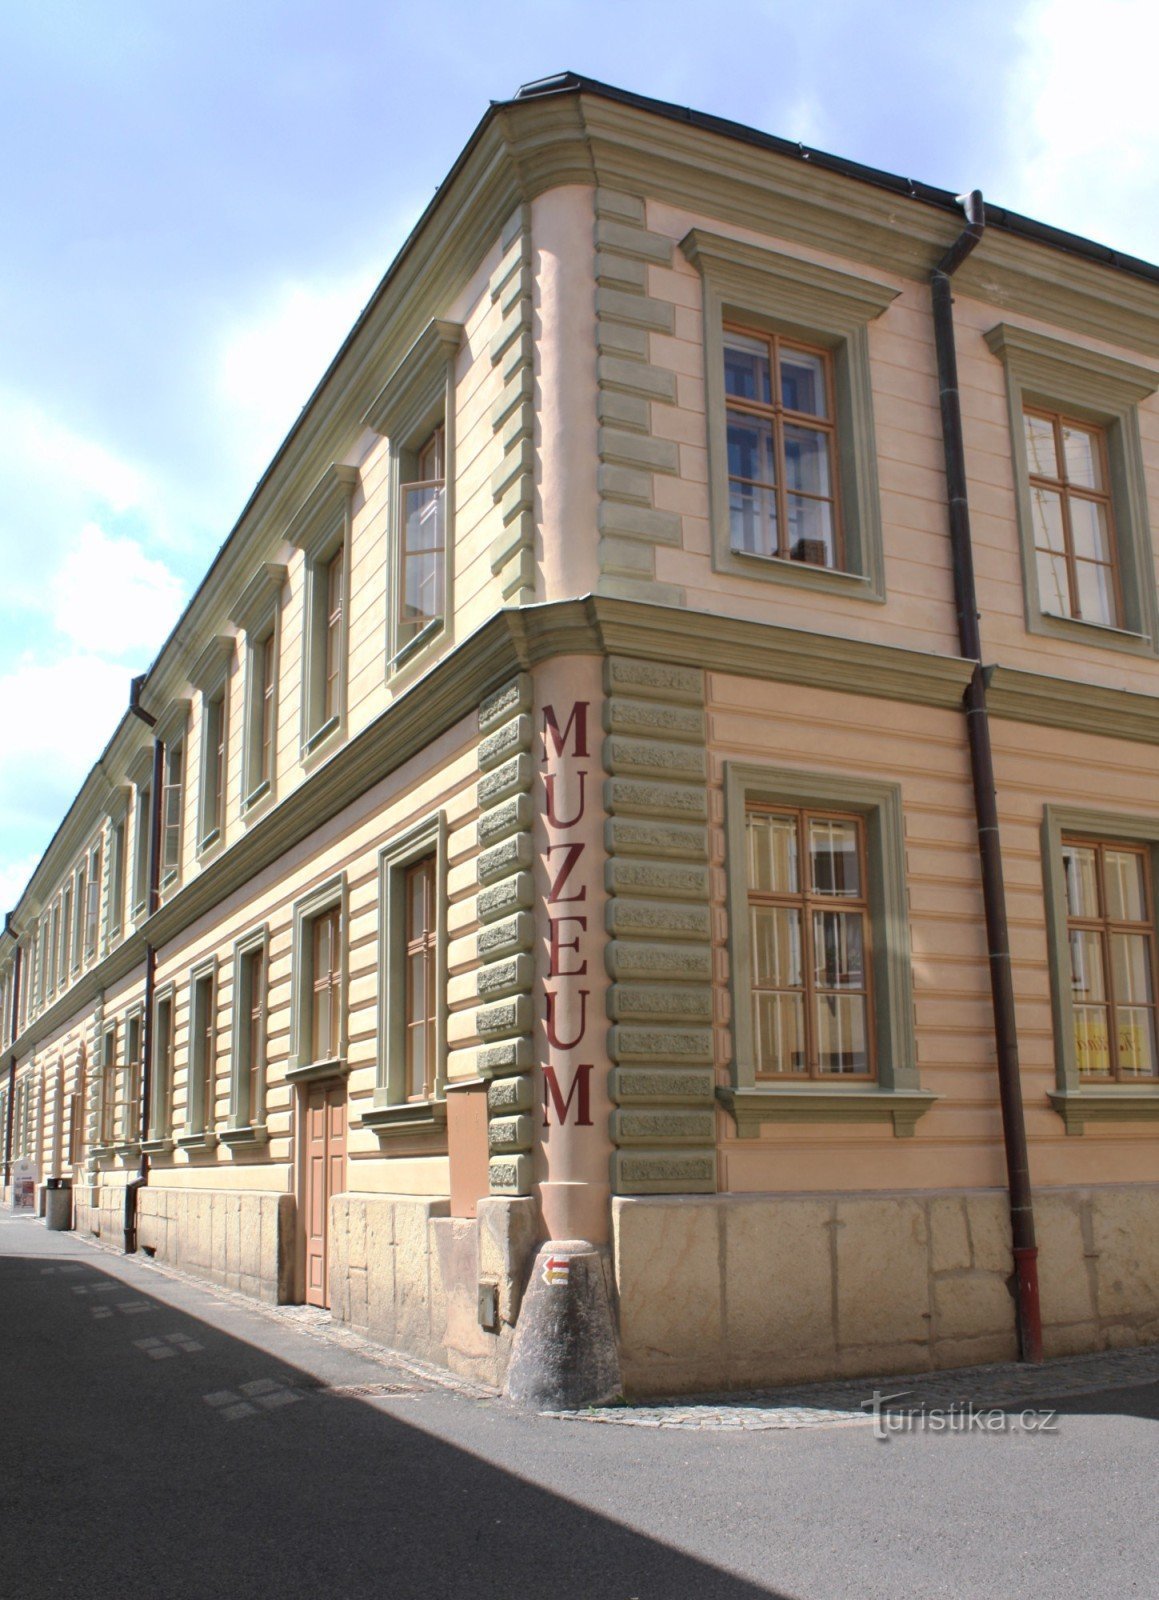 Polička - objekt muzea